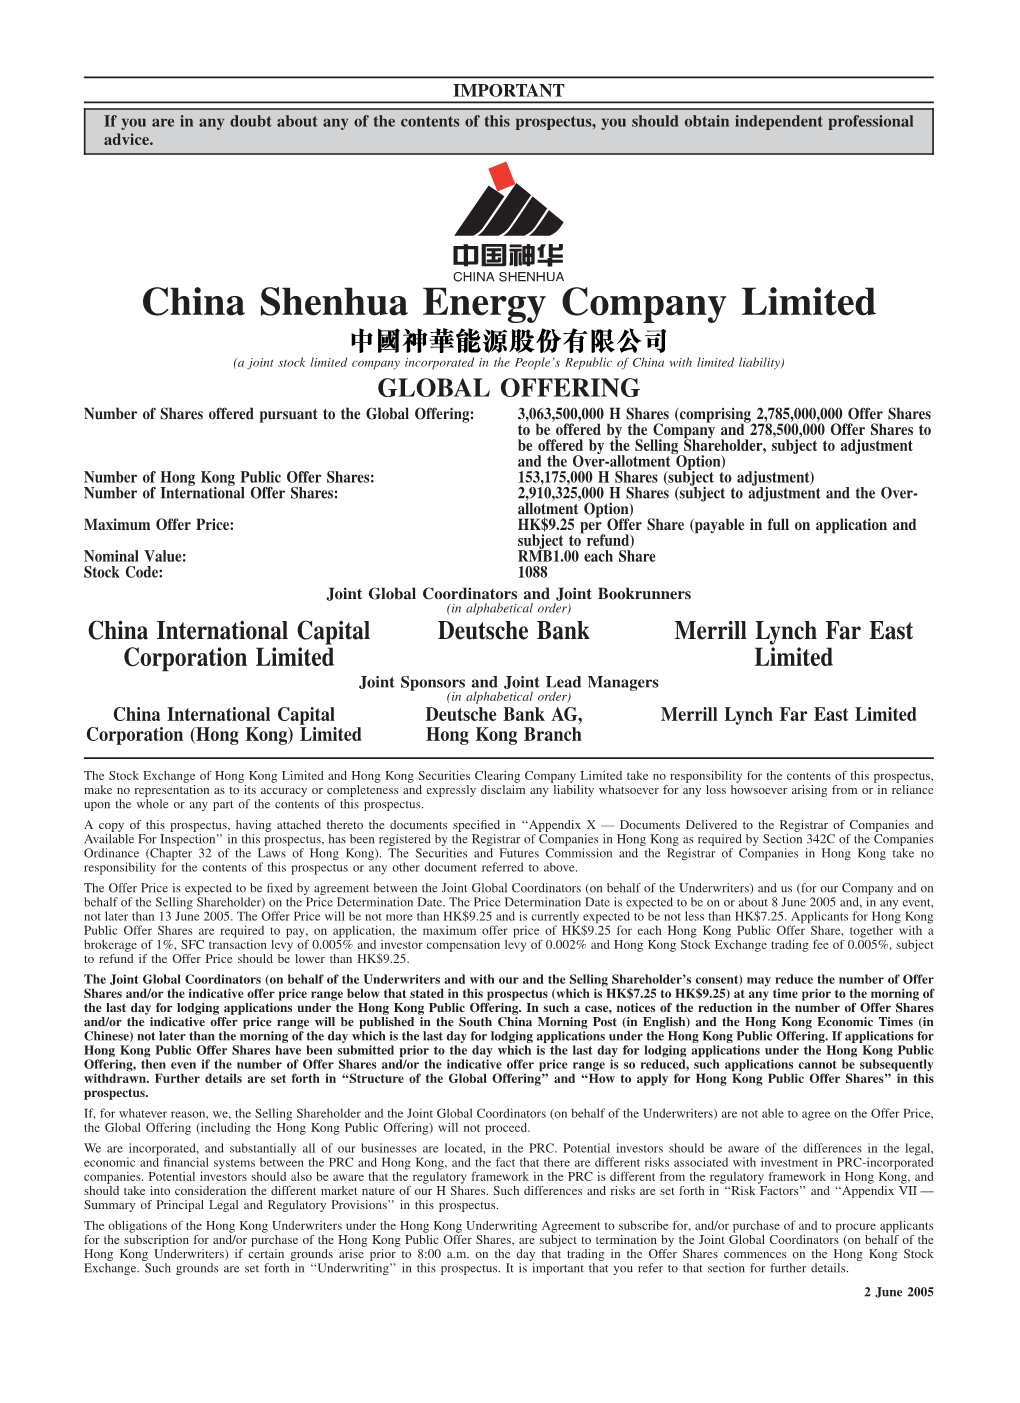 China Shenhua Energy Company Limited A1A(1)